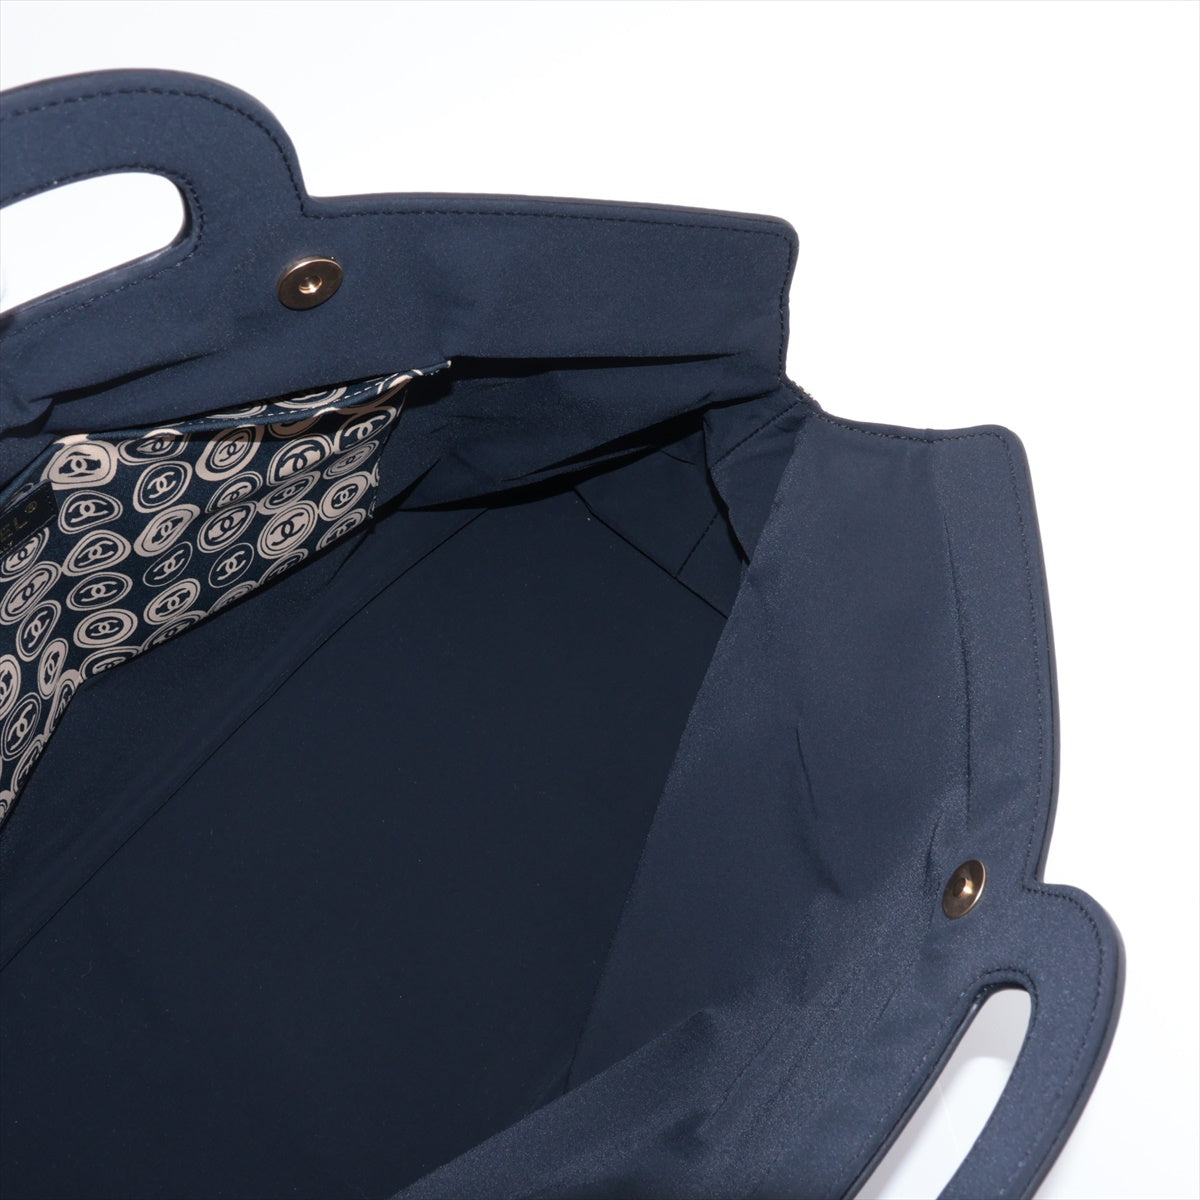 Chanel Coco Cotton Jacket Handbag Black G  8th